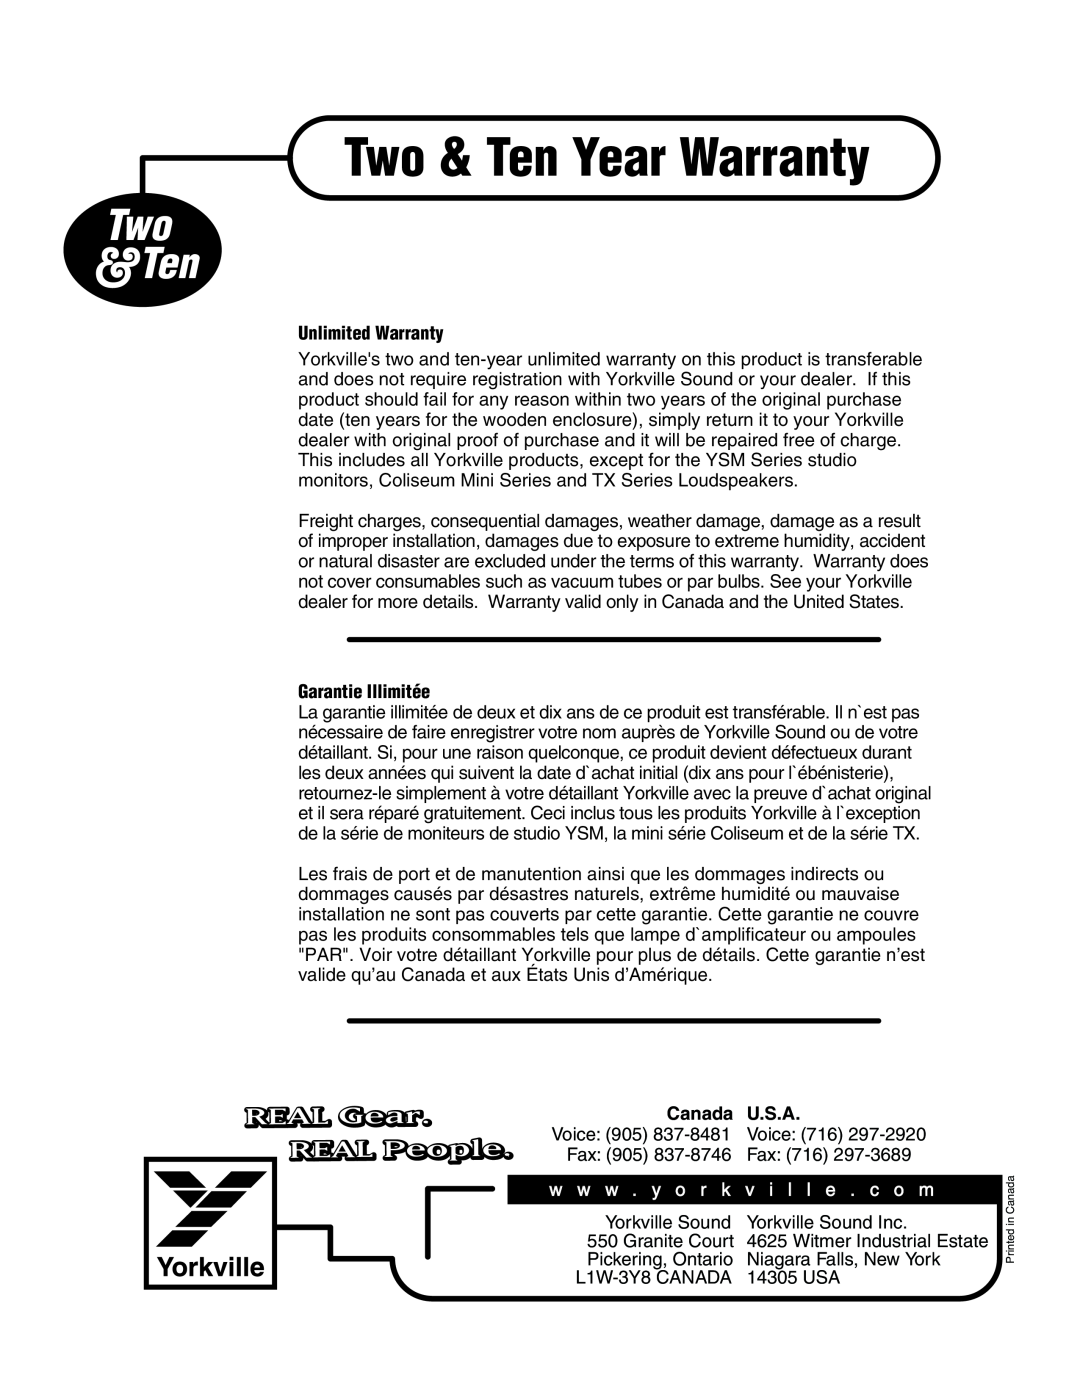 Yorkville Sound E160P Two & Ten Year Warranty, Two &Ten, REAL Gear, REAL People, Unlimited Warranty, Garantie Illimitée 